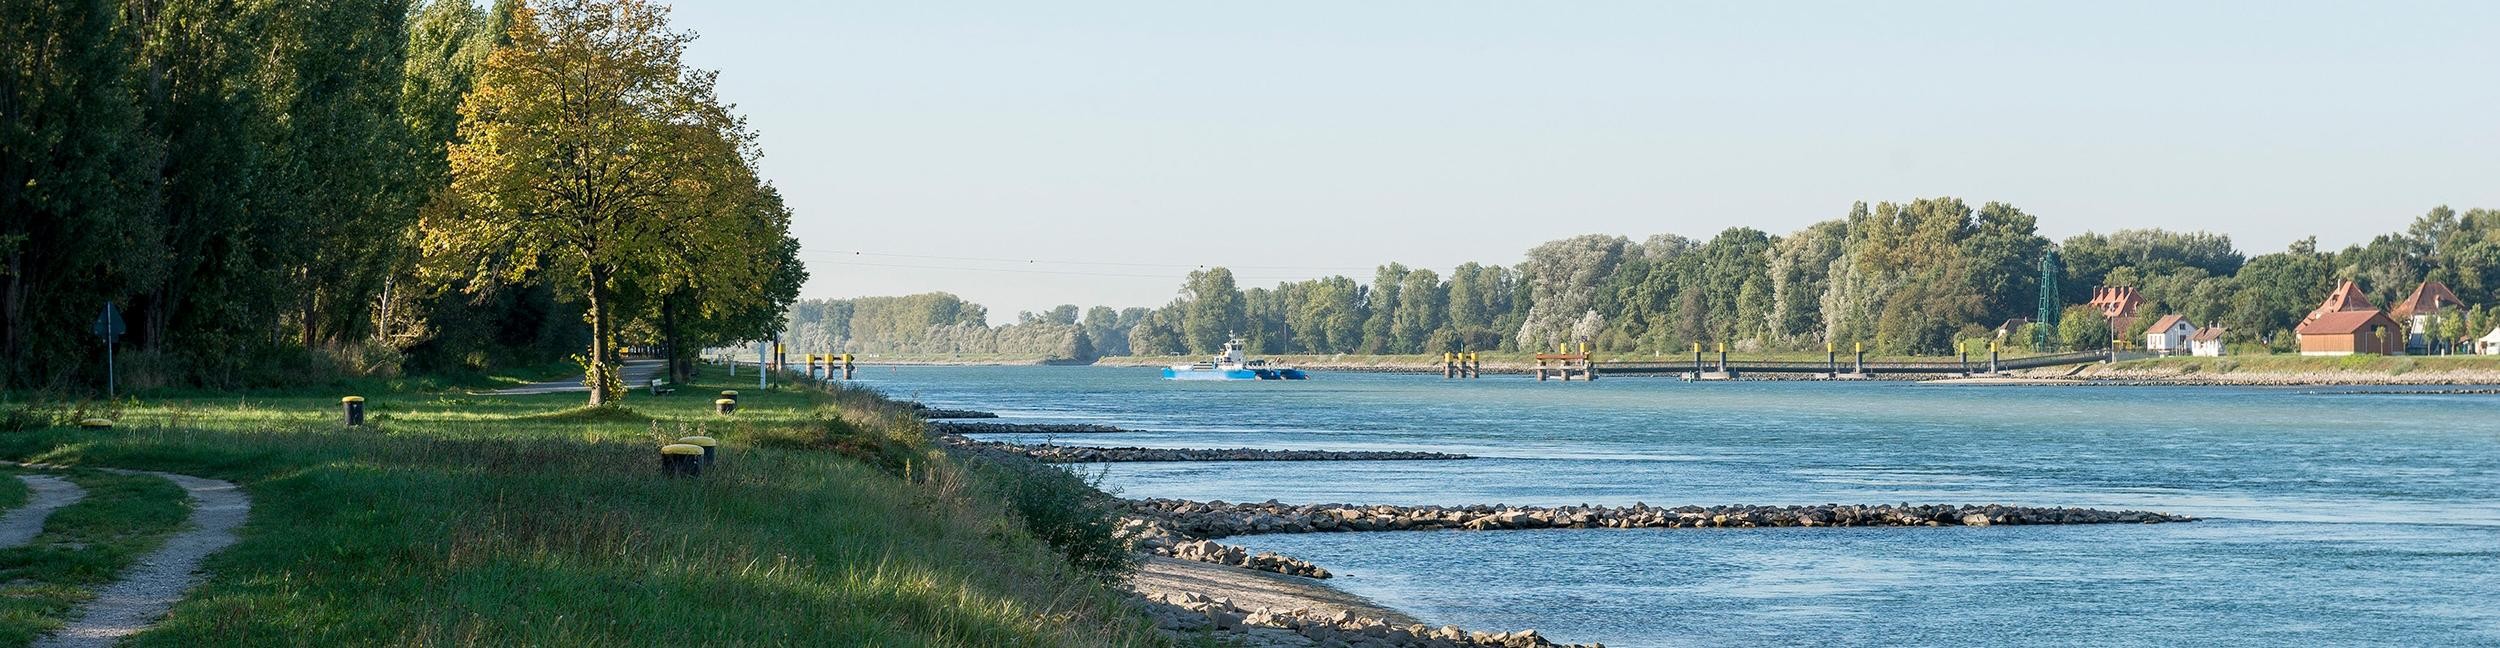 Les rives du Rhin à Plittersdorf